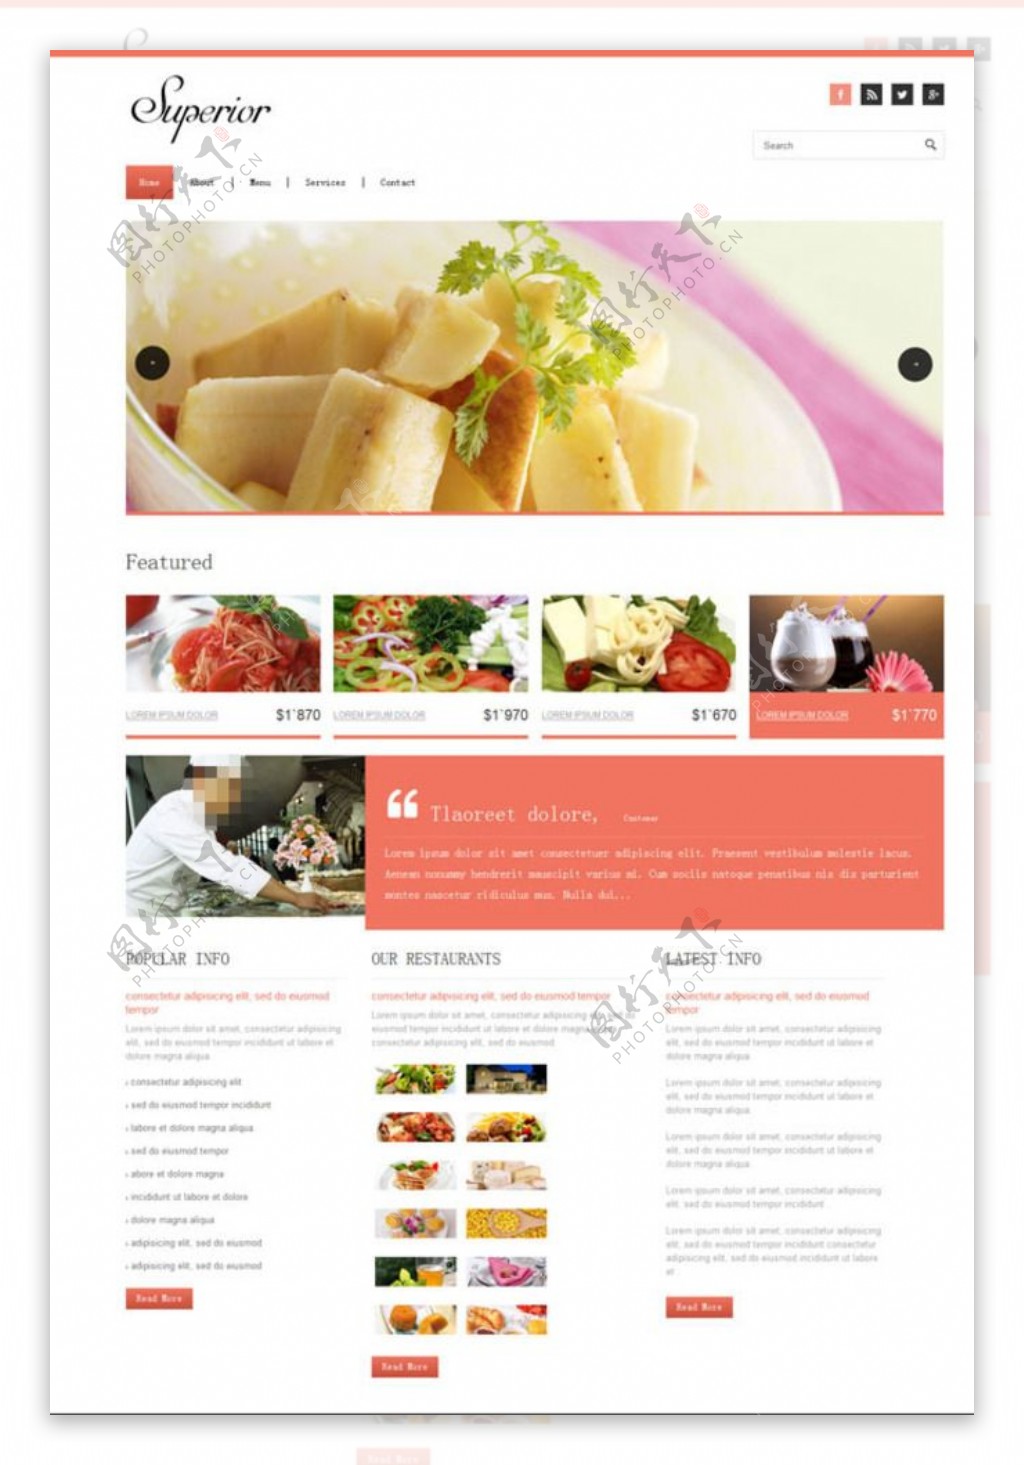 水果拼盘美食网站模板图片